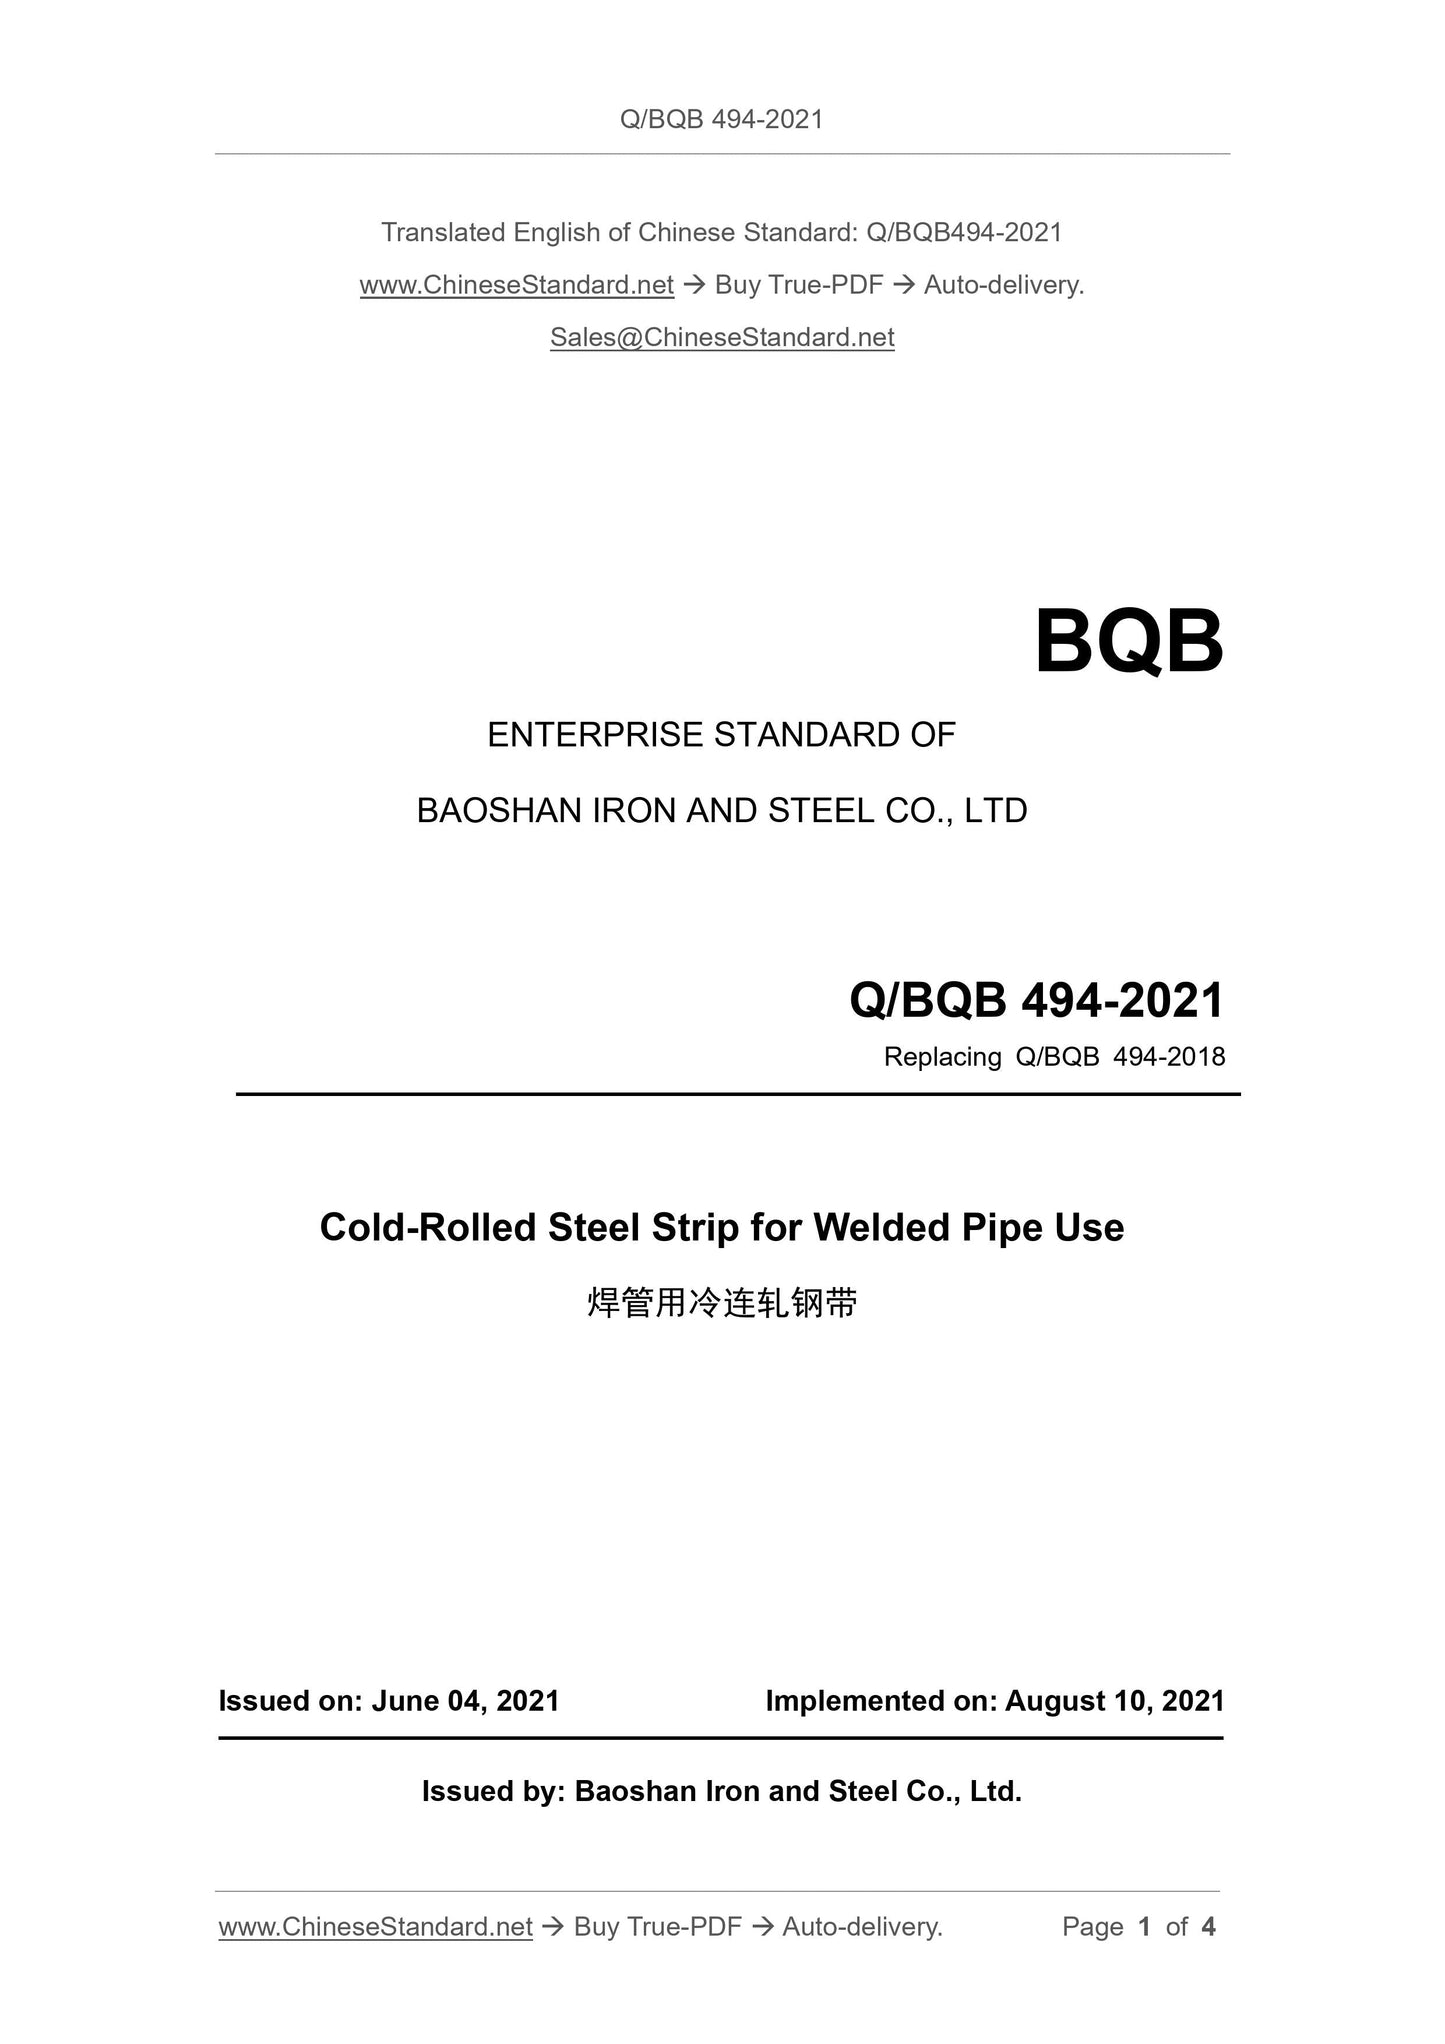 Q/BQB 494-2021 Page 1